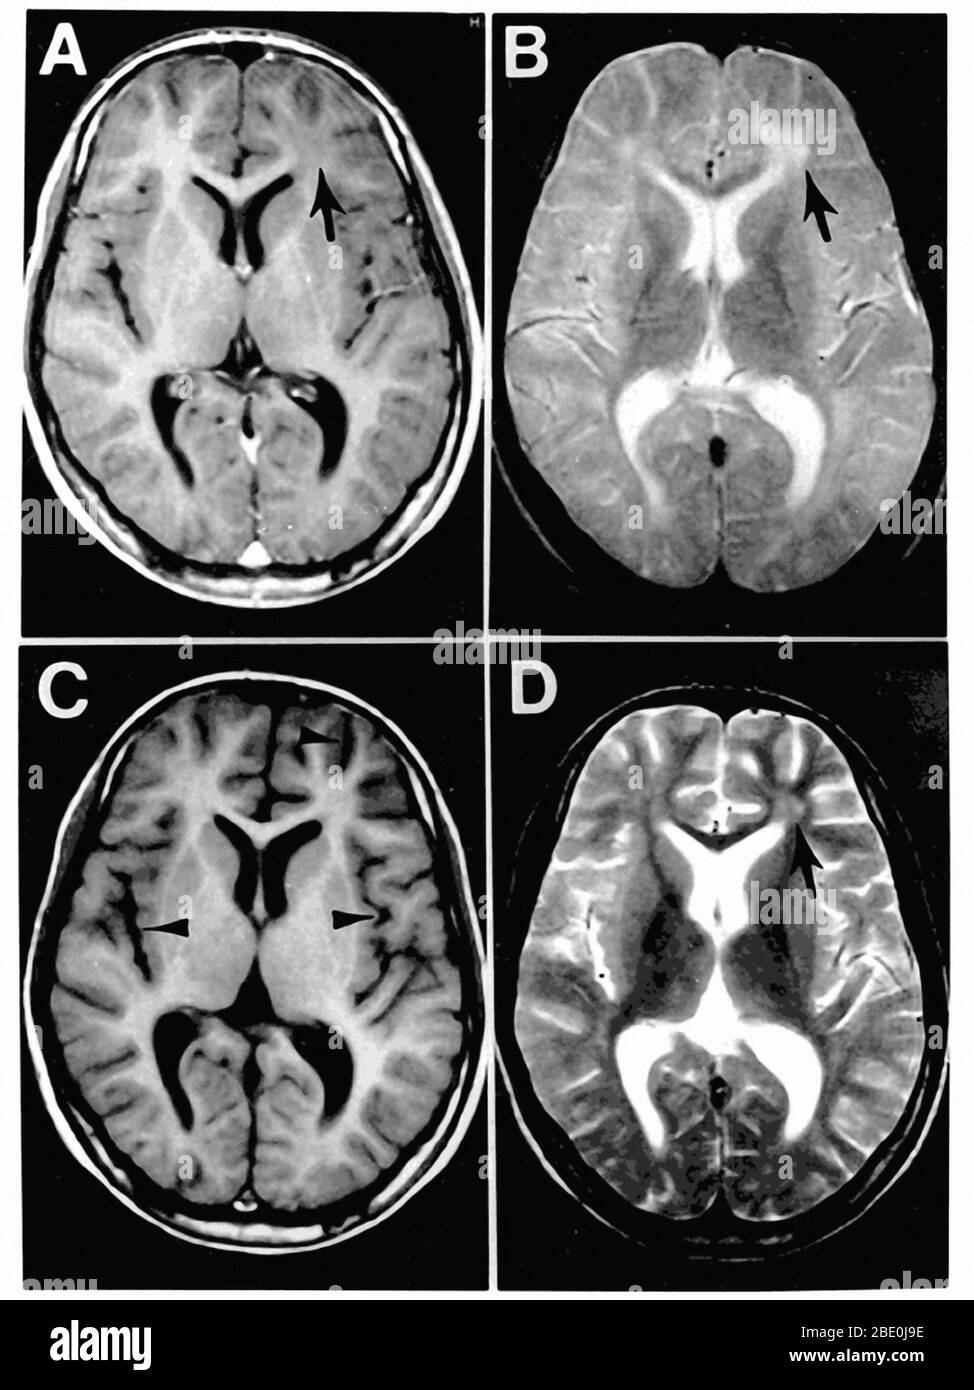 Subakute sklerosierende Panenzephalitis (KOMPLIKATION der Maserninfektion). Abbildung 1. MRT-Aufnahmen des Gehirns zum Zeitpunkt der Präsentation in der neurologischen Klinik (A und B) und 3 Monate später (C und D). Die Felder A und C sind T1-gewichtete Bilder, B und D T2-gewichtete Bilder. Die erste MRT-Untersuchung (A und B) zeigt eine fokale Anomalie in der subkortikalen weißen Substanz des linken Frontallappen, bestehend aus einem hypointenten Signal auf dem T1-gewichteten Bild (Pfeil in A) und einem hyperintensiven Signal auf dem T2-gewichteten Bild (Pfeil in B). Bei der Nachuntersuchung ist die fokale Anomalie im linken Frontallappen l Stockfoto